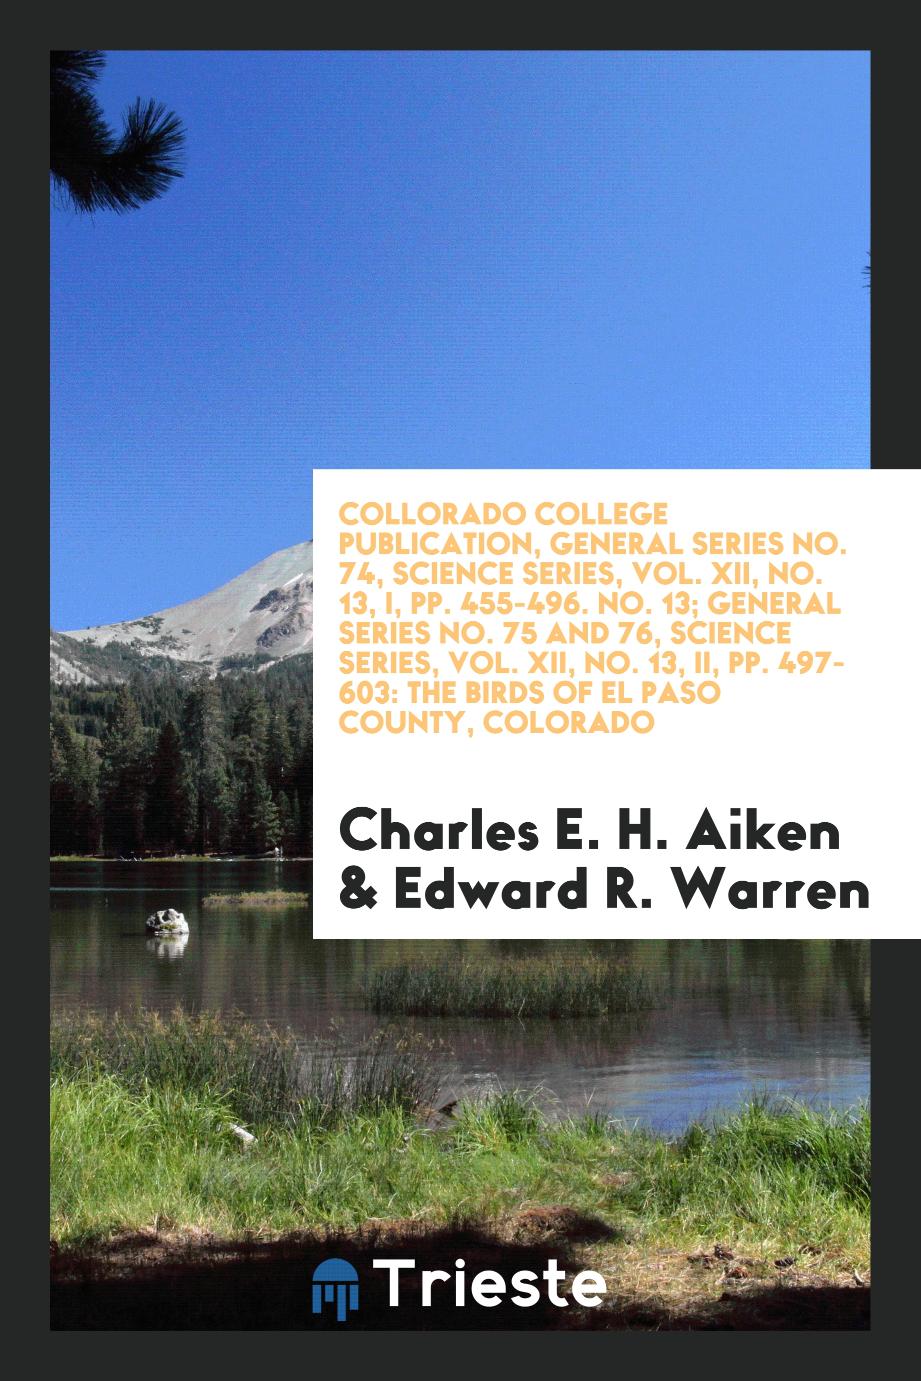 Collorado College Publication, General Series No. 74, Science Series, Vol. XII, No. 13, I, pp. 455-496. No. 13; General Series No. 75 and 76, Science Series, Vol. XII, No. 13, II, pp. 497-603: The Birds of El Paso County, Colorado